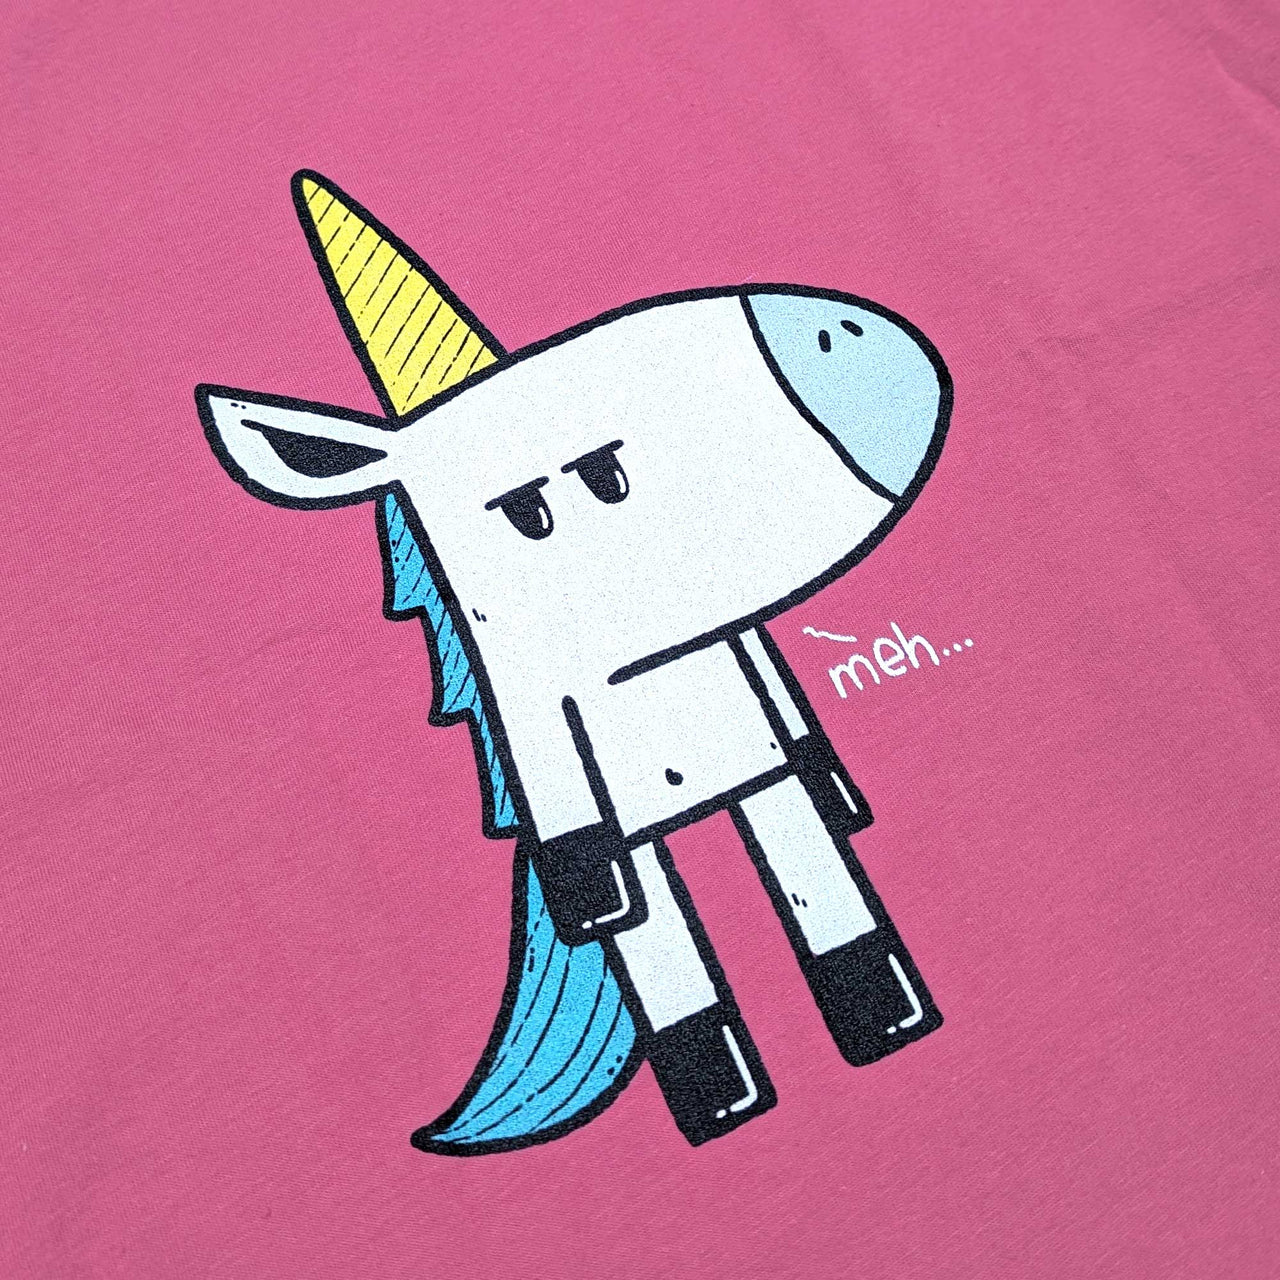 Grumpy Unicorn Youth T-Shirt